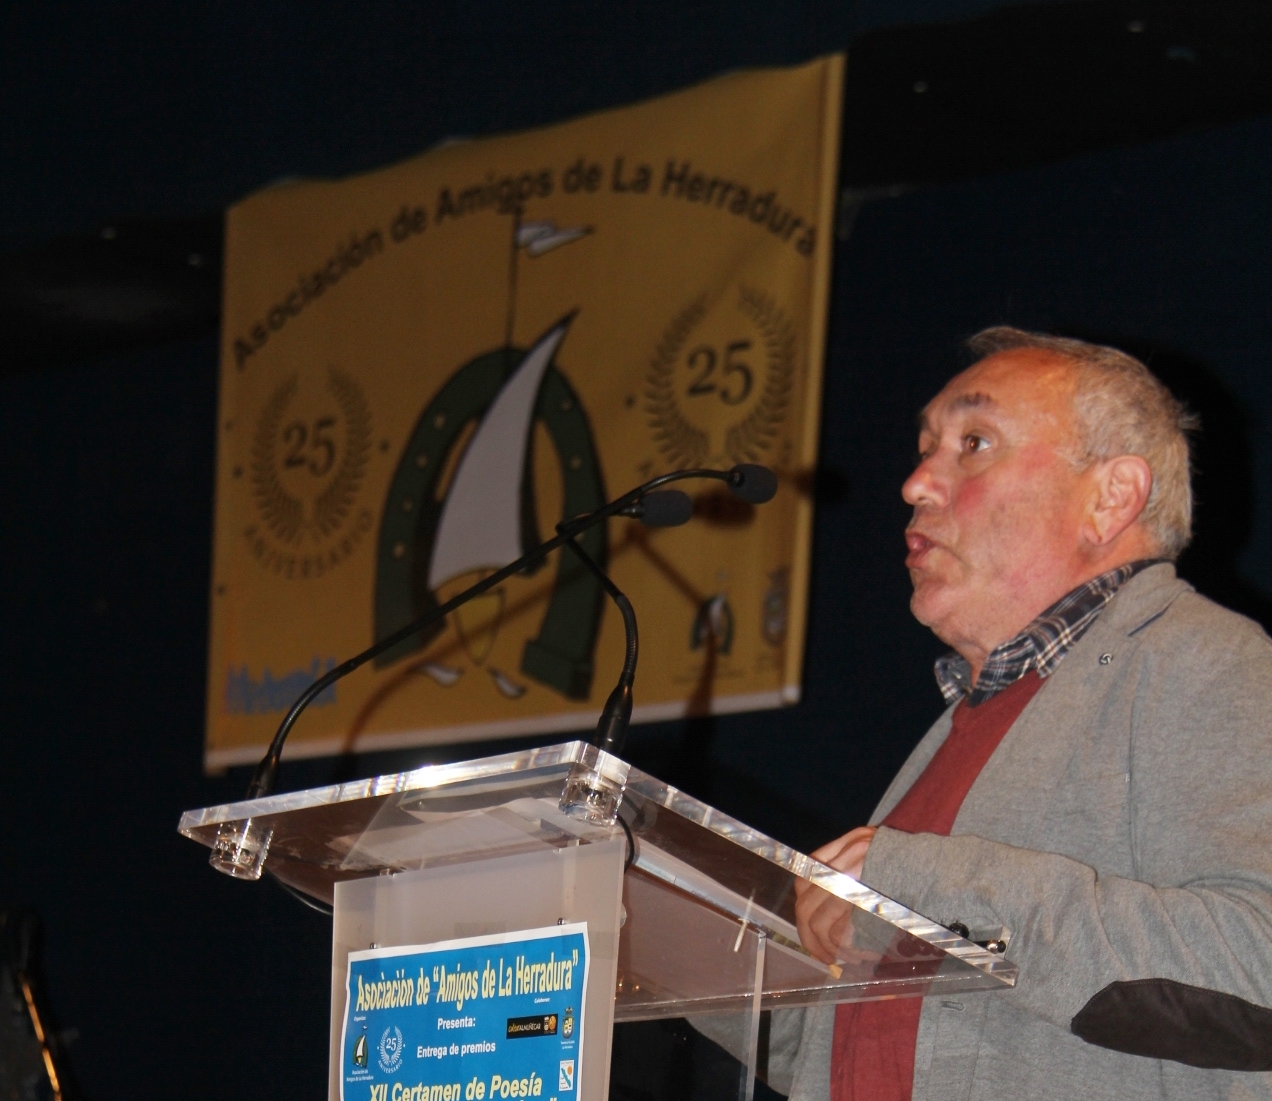 El cordobés Juan Antonio Bernier gana el I Premio Internacional de Poesía La Herradura “Paulino Álvarez” por el poema 'Lección del ruiseñor'